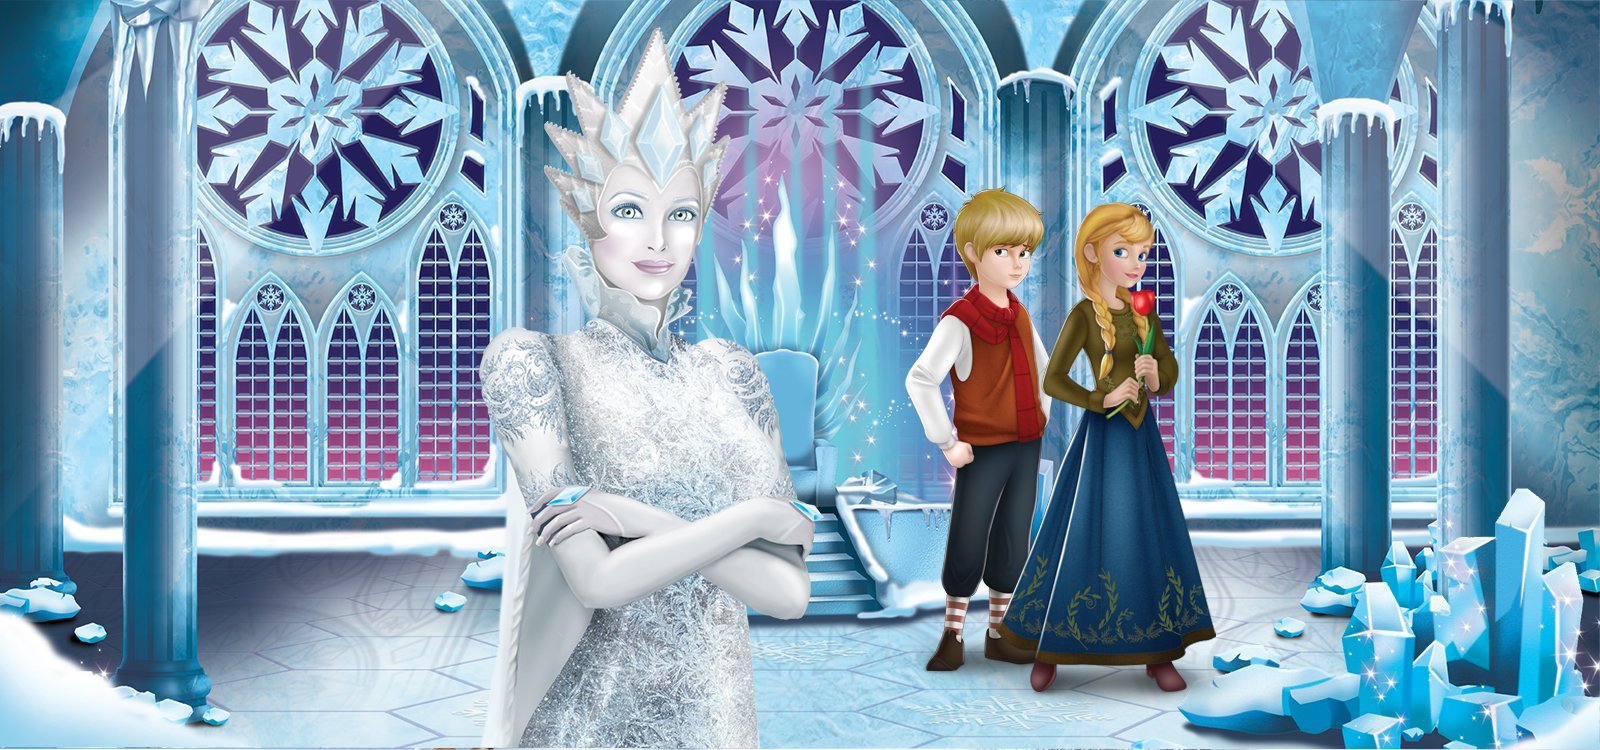 Снежная королева 5 бесплатная игра